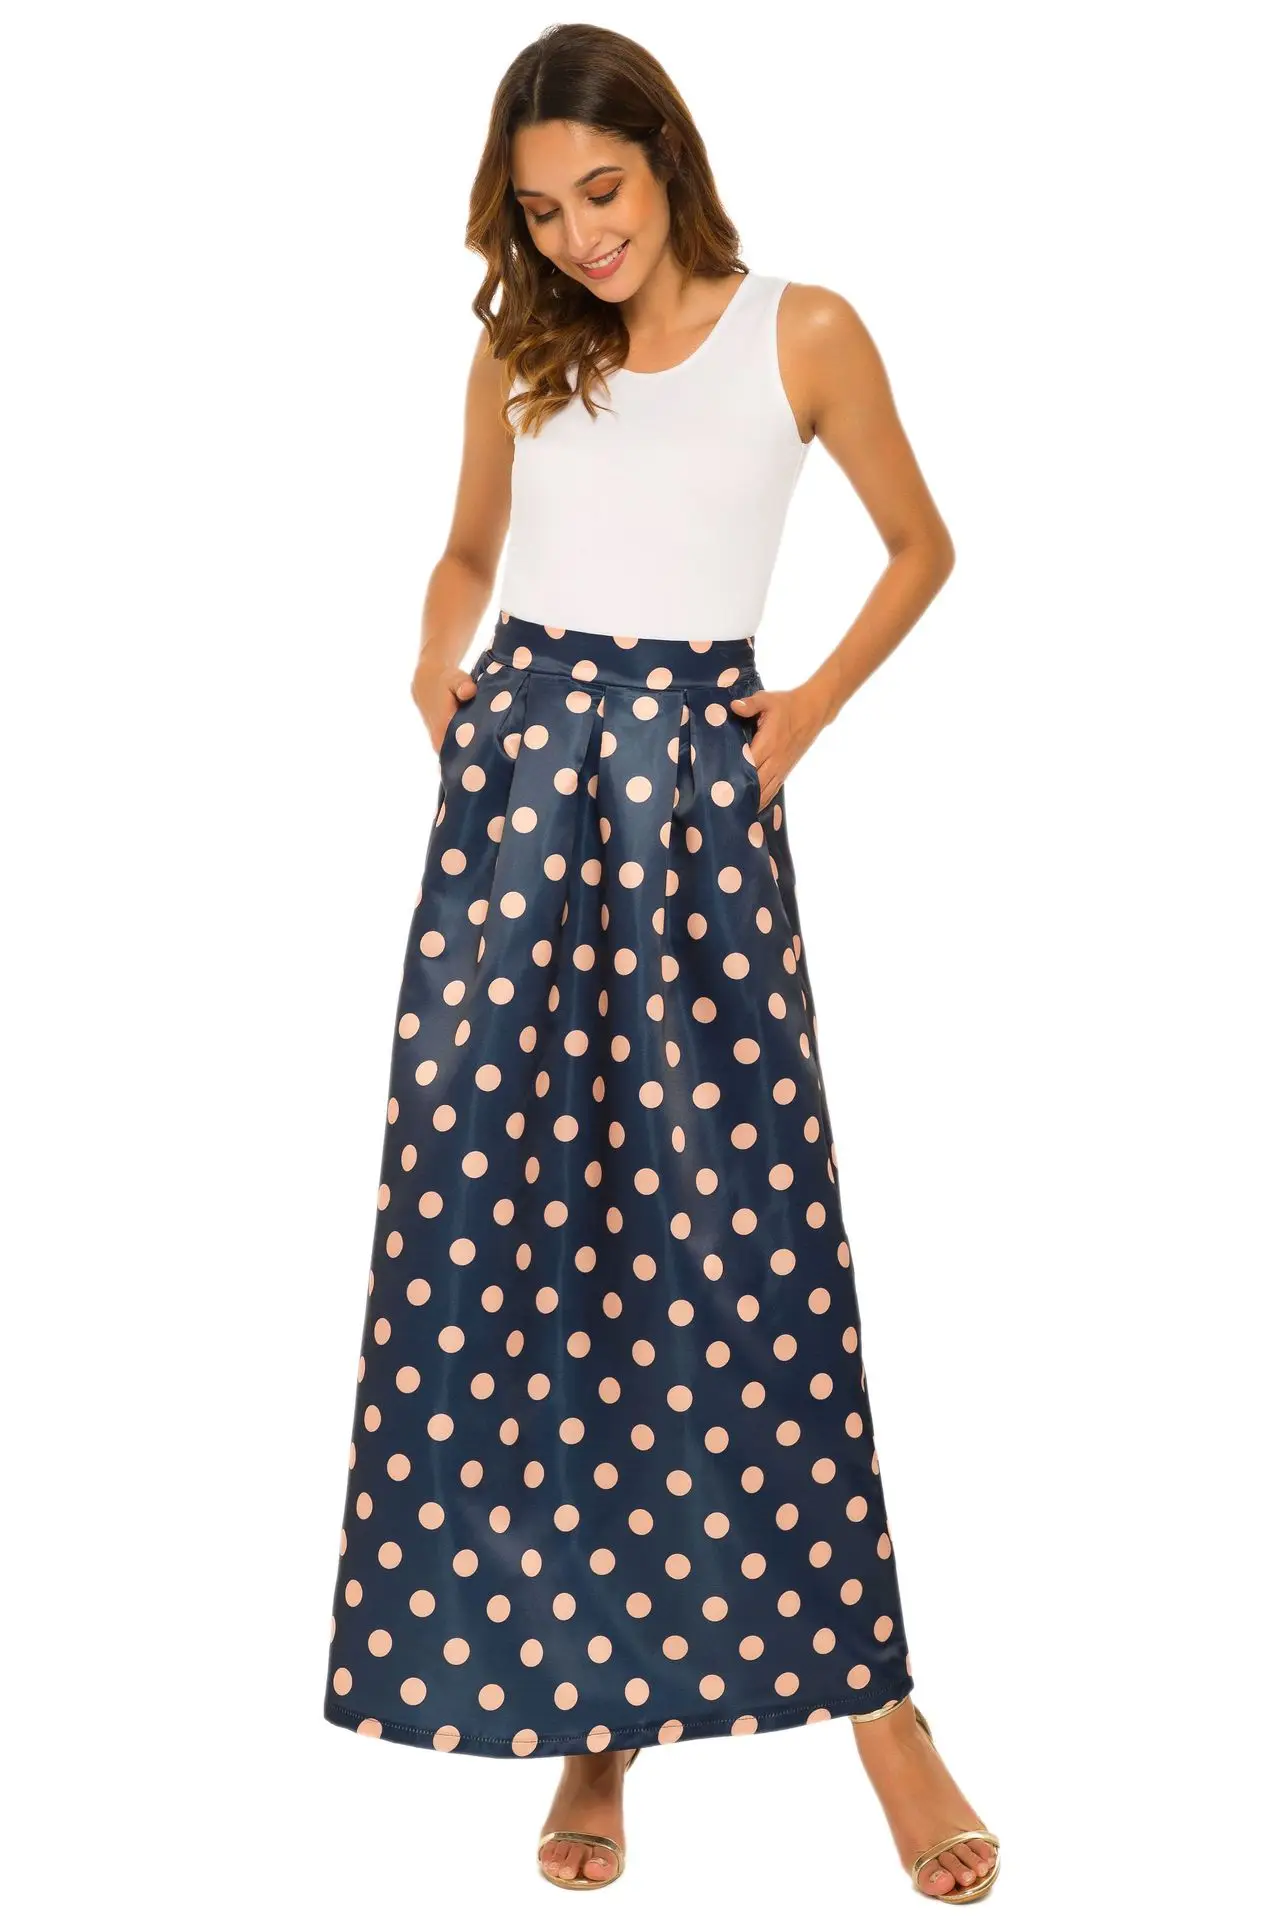 Летняя новая стильная юбка женское платье Европа и Америка Amazon Ebay винтажная юбка с принтом